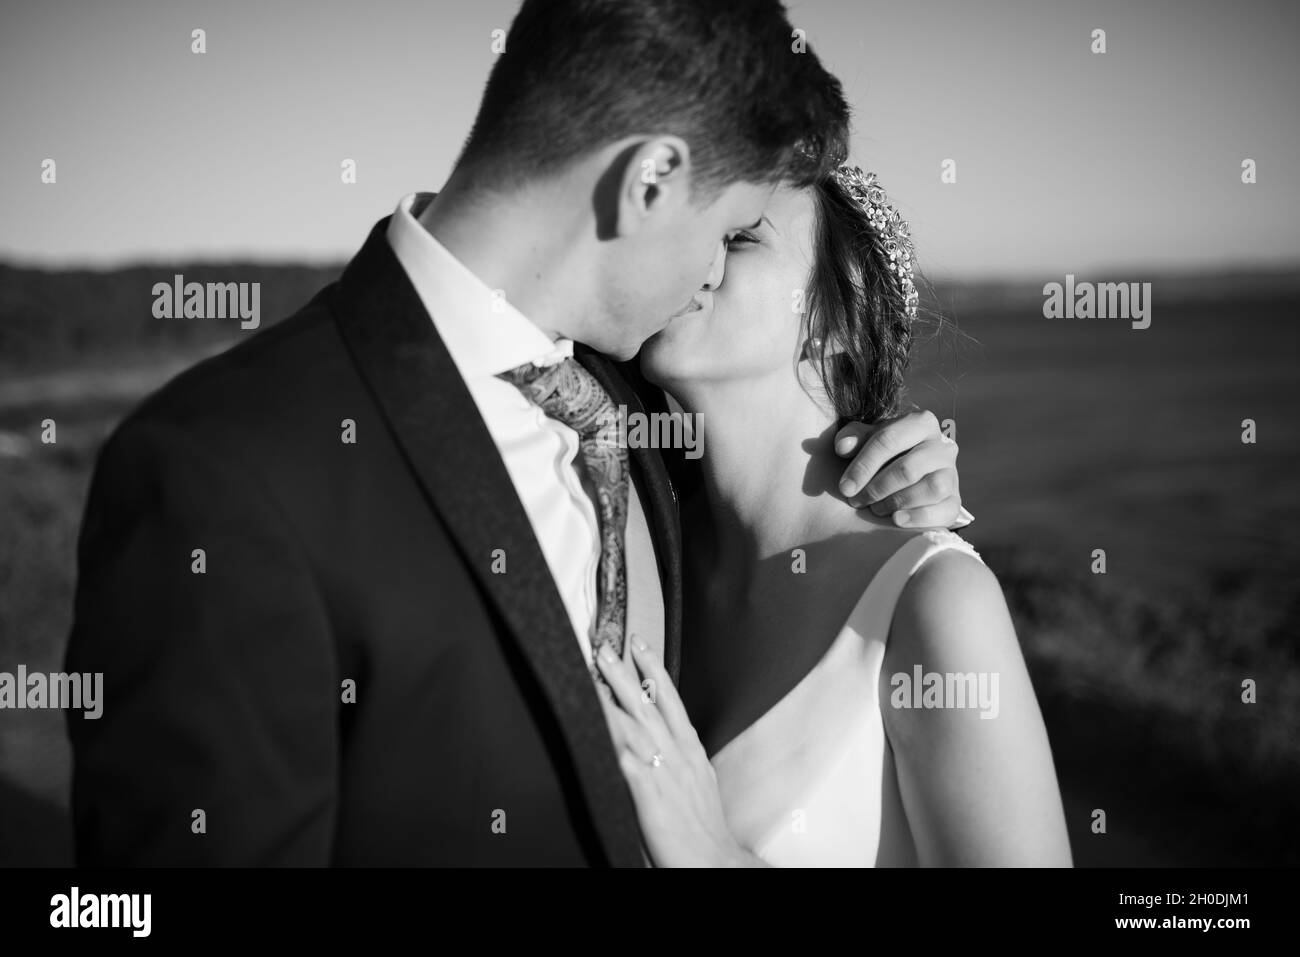 Un couple vient de s'embrasser en noir et blanc Banque D'Images